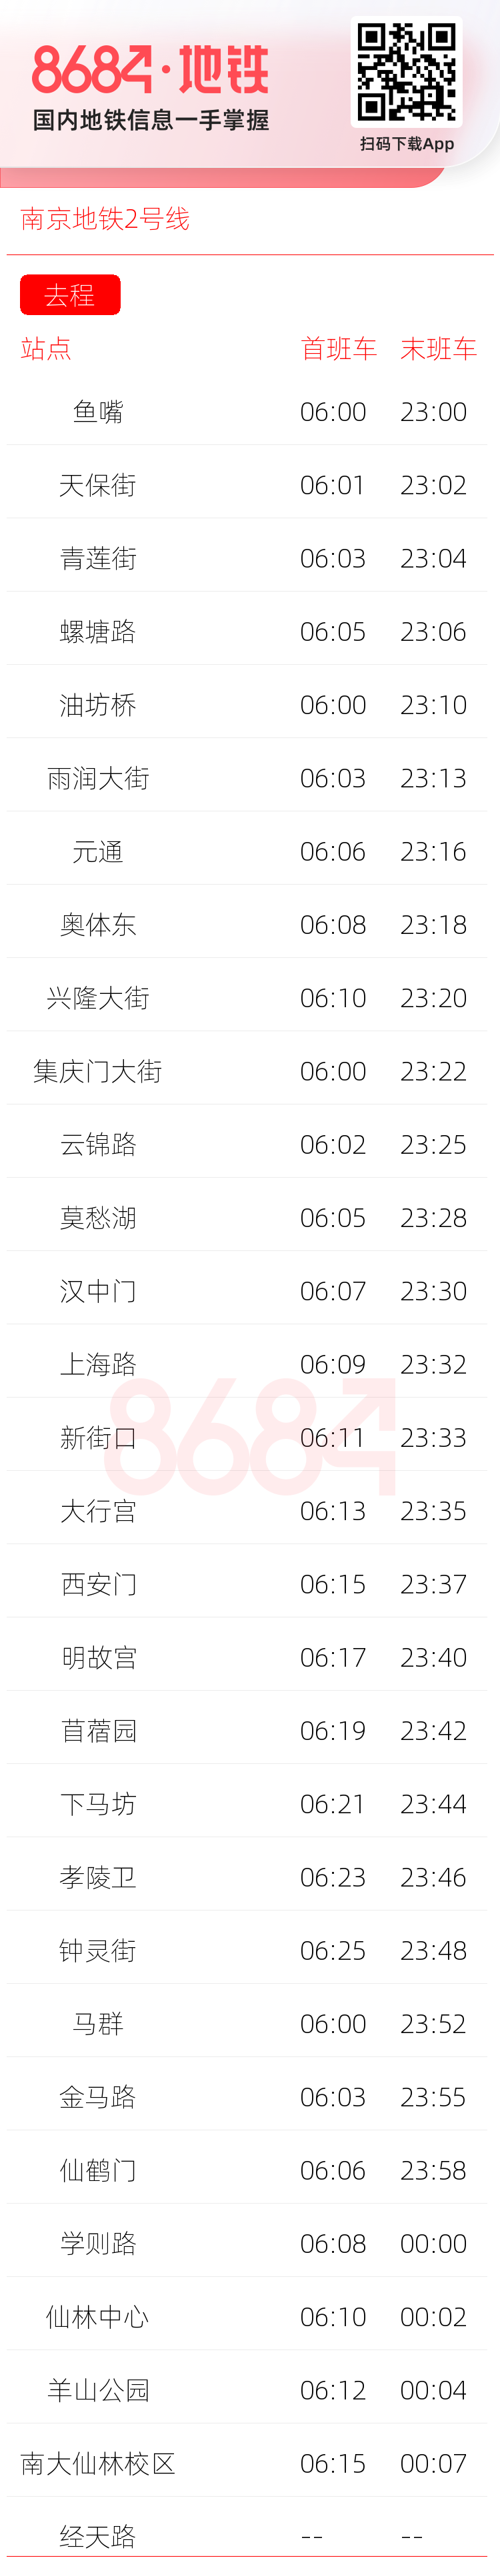 南京地铁2号线运营时间表